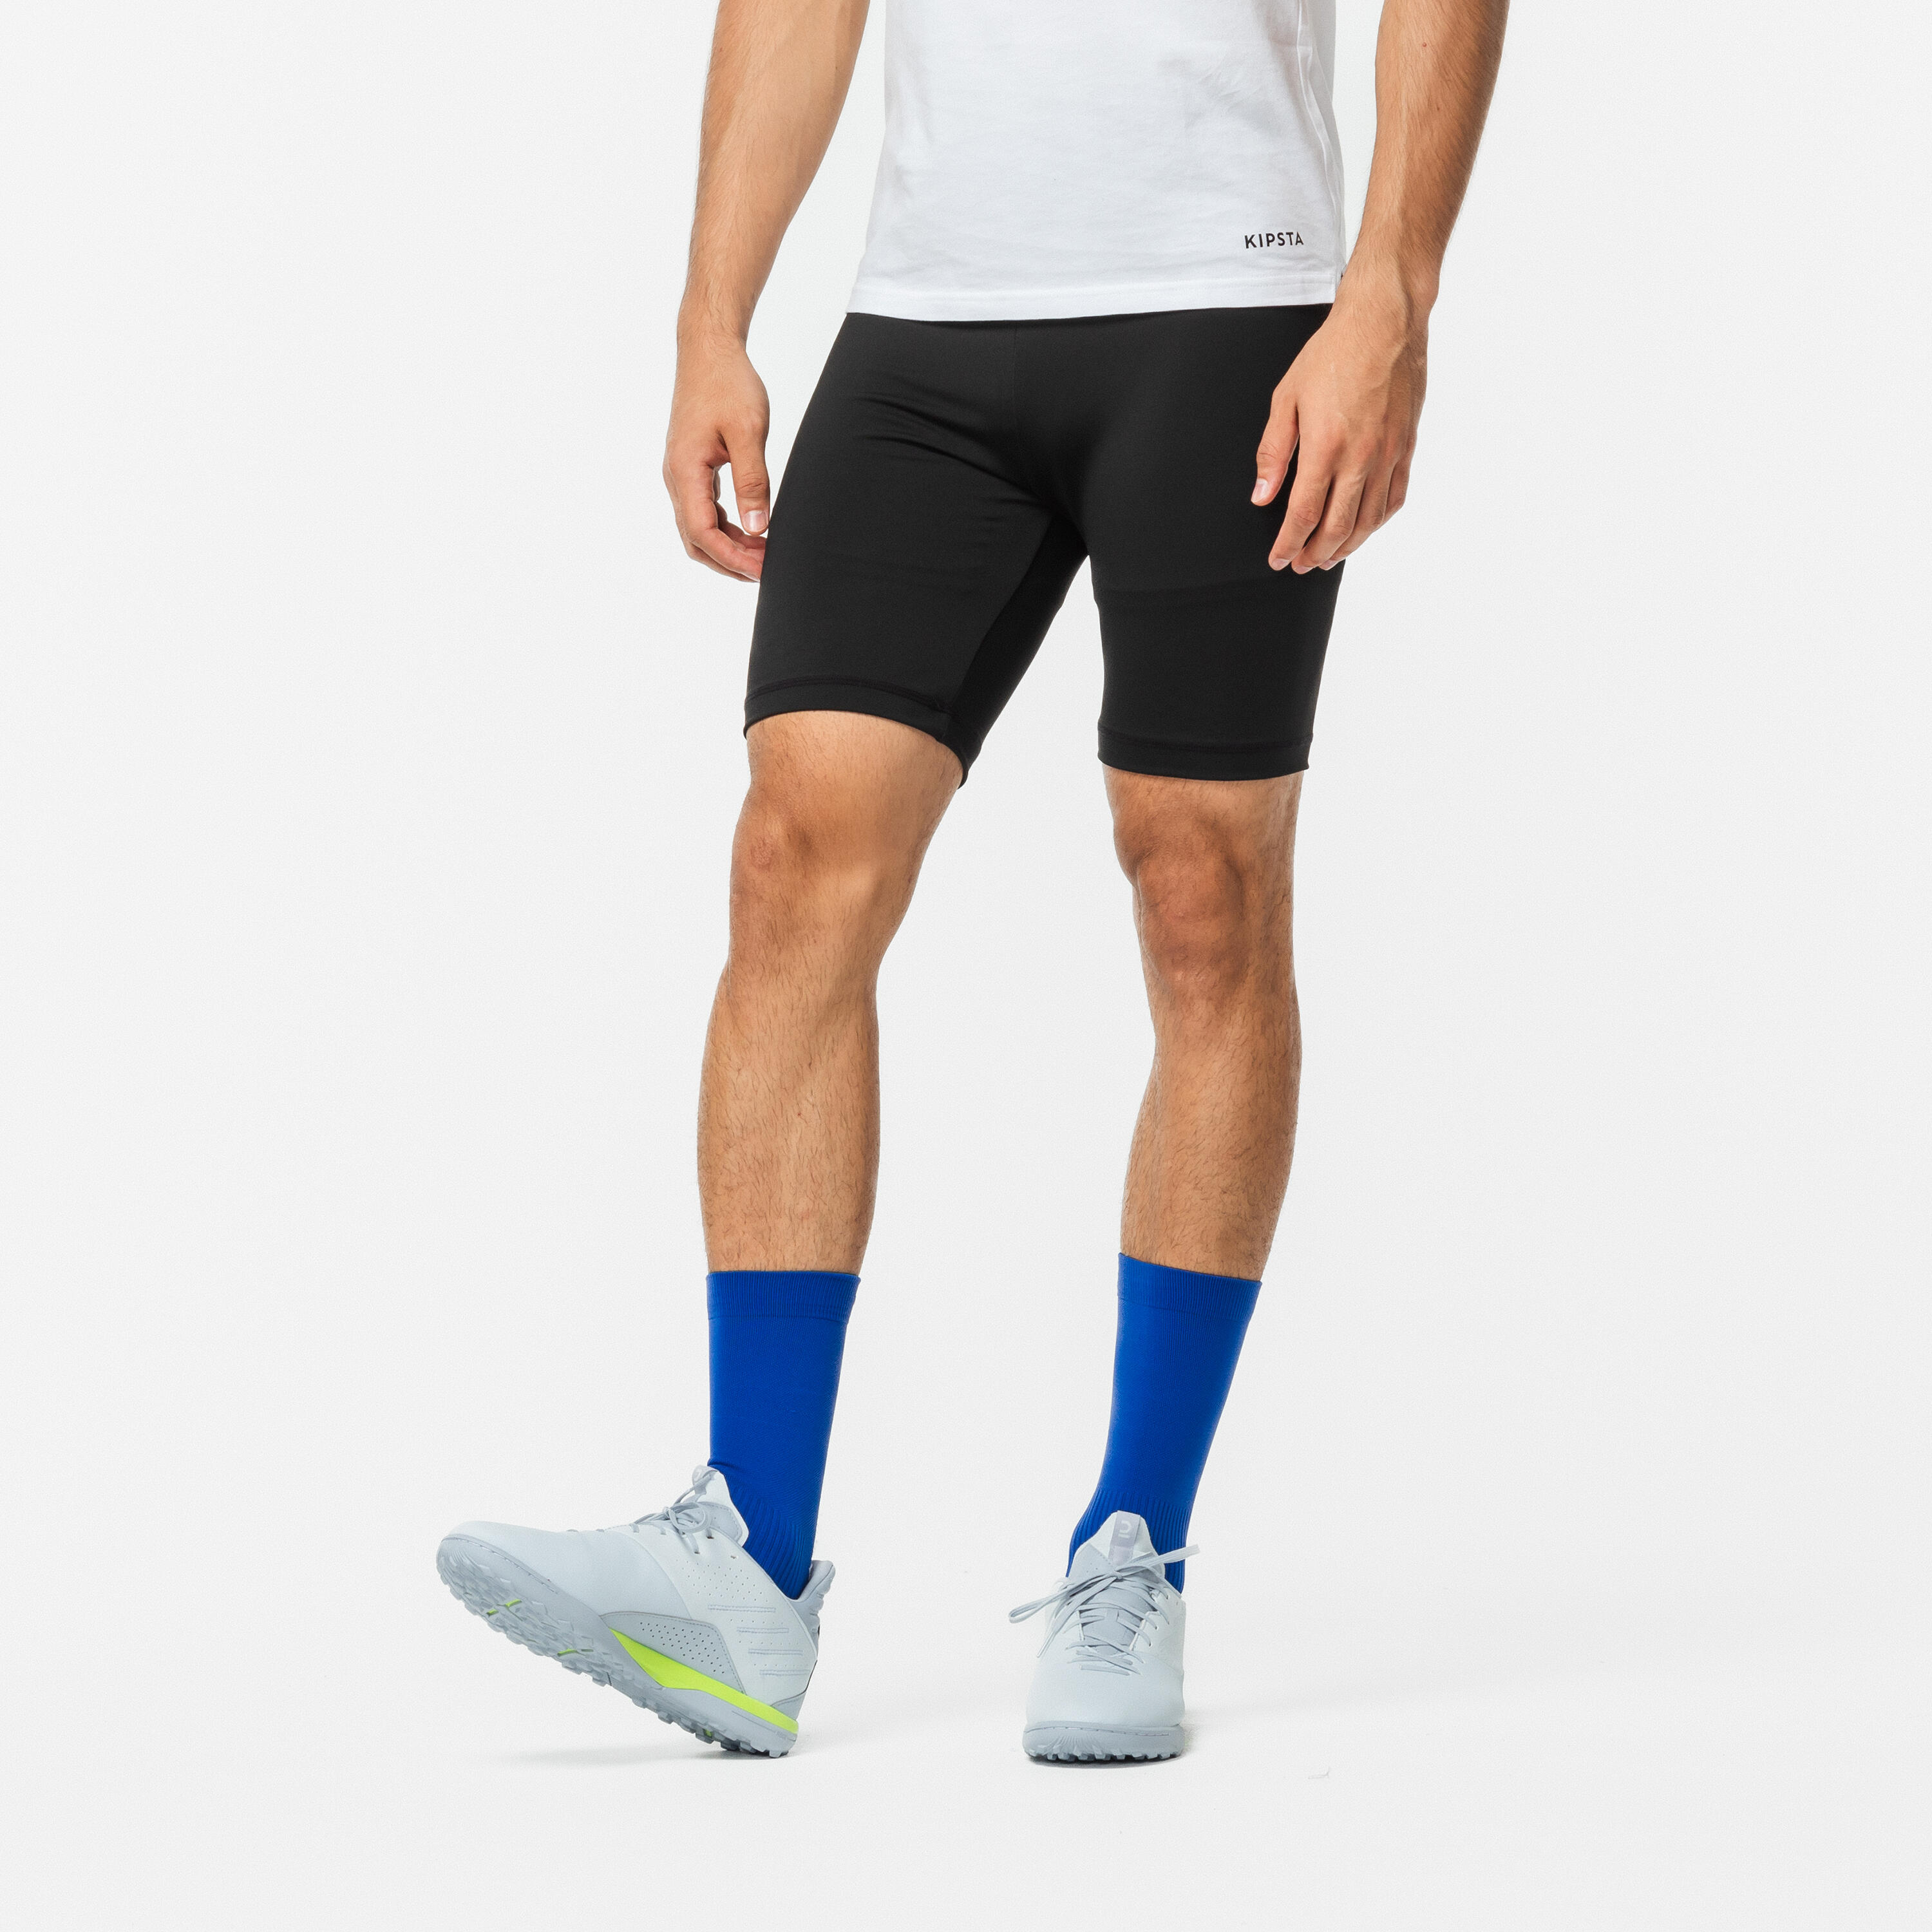 Decathlon Underwear Men Breathable Running Briefs (Stretchable